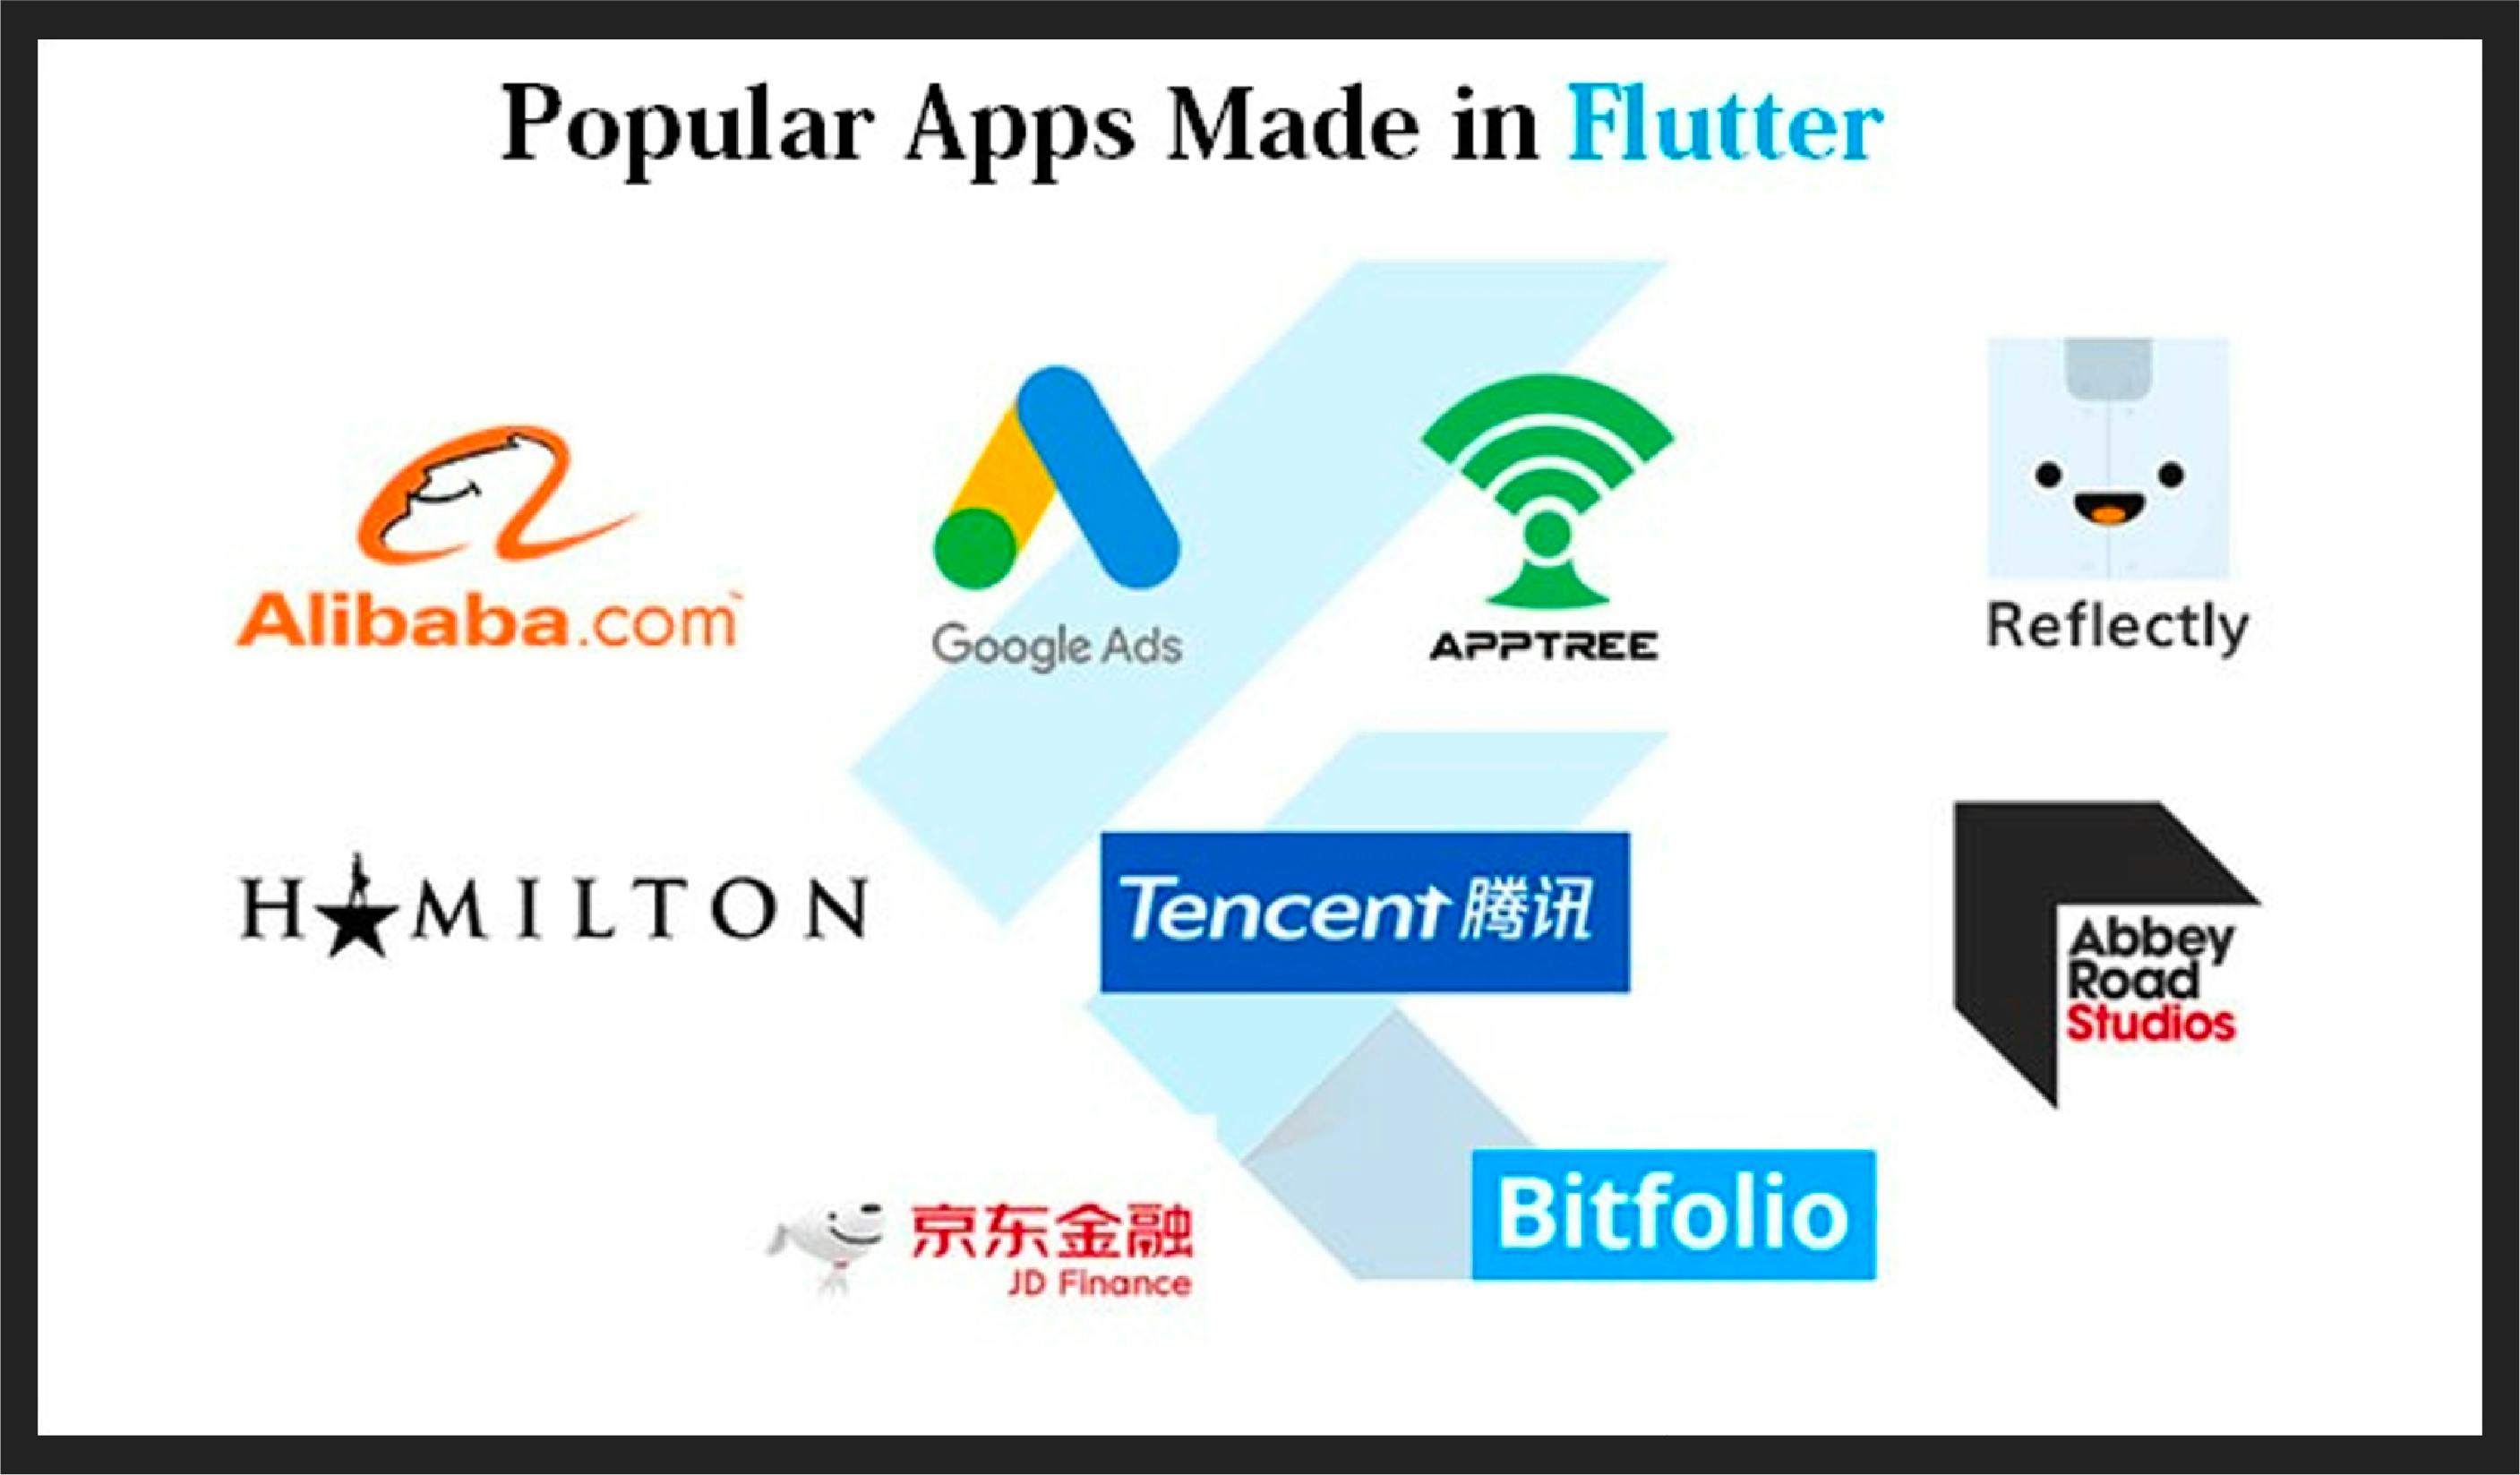 Popular apps made in Flutter